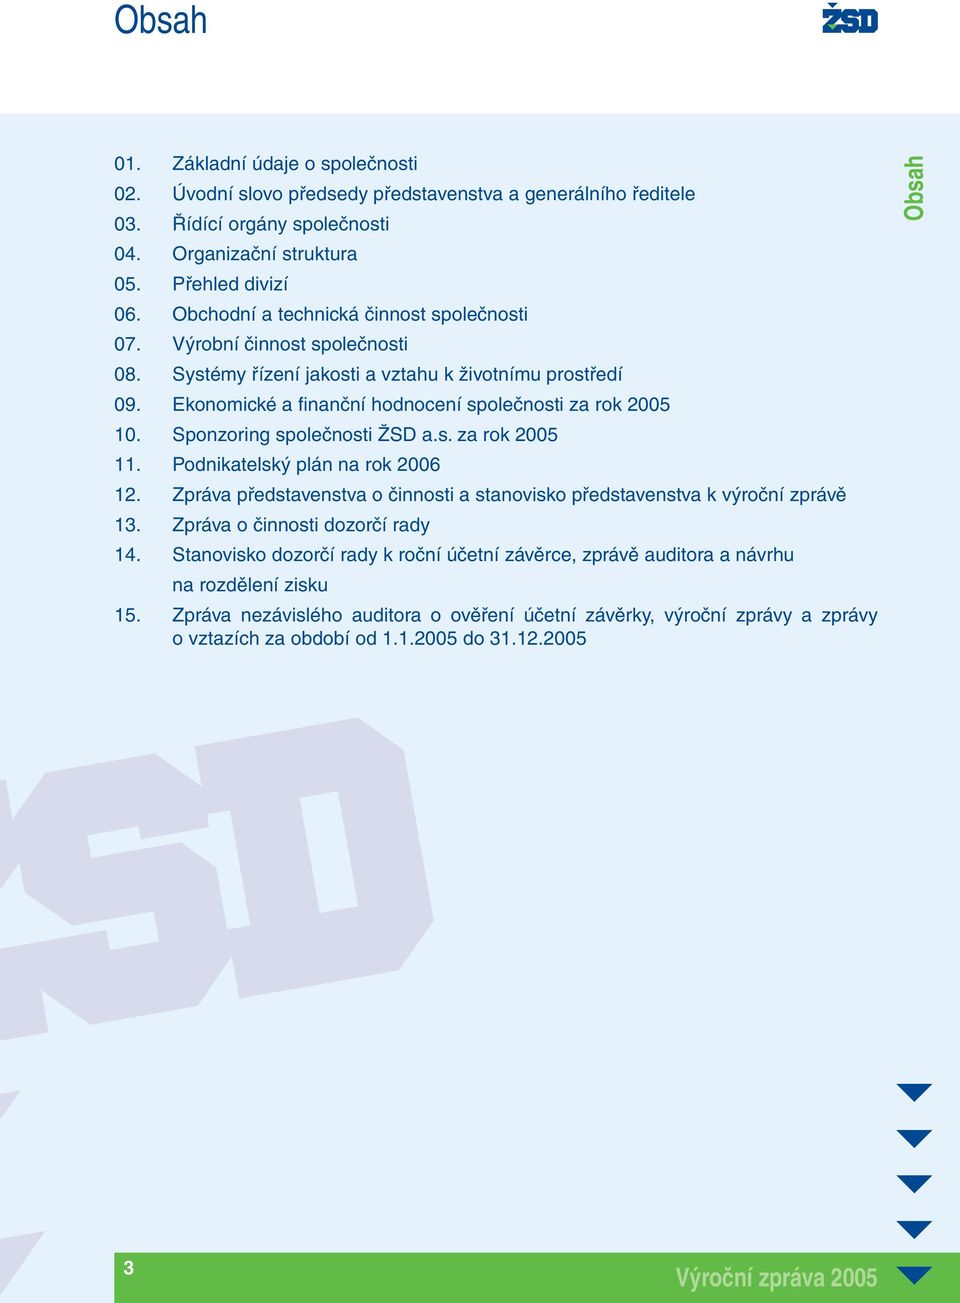 Sponzoring společnosti ŽSD a.s. za rok 2005 11. Podnikatelský plán na rok 2006 12. Zpráva představenstva o činnosti a stanovisko představenstva k výroční zprávě 13. Zpráva o činnosti dozorčí rady 14.